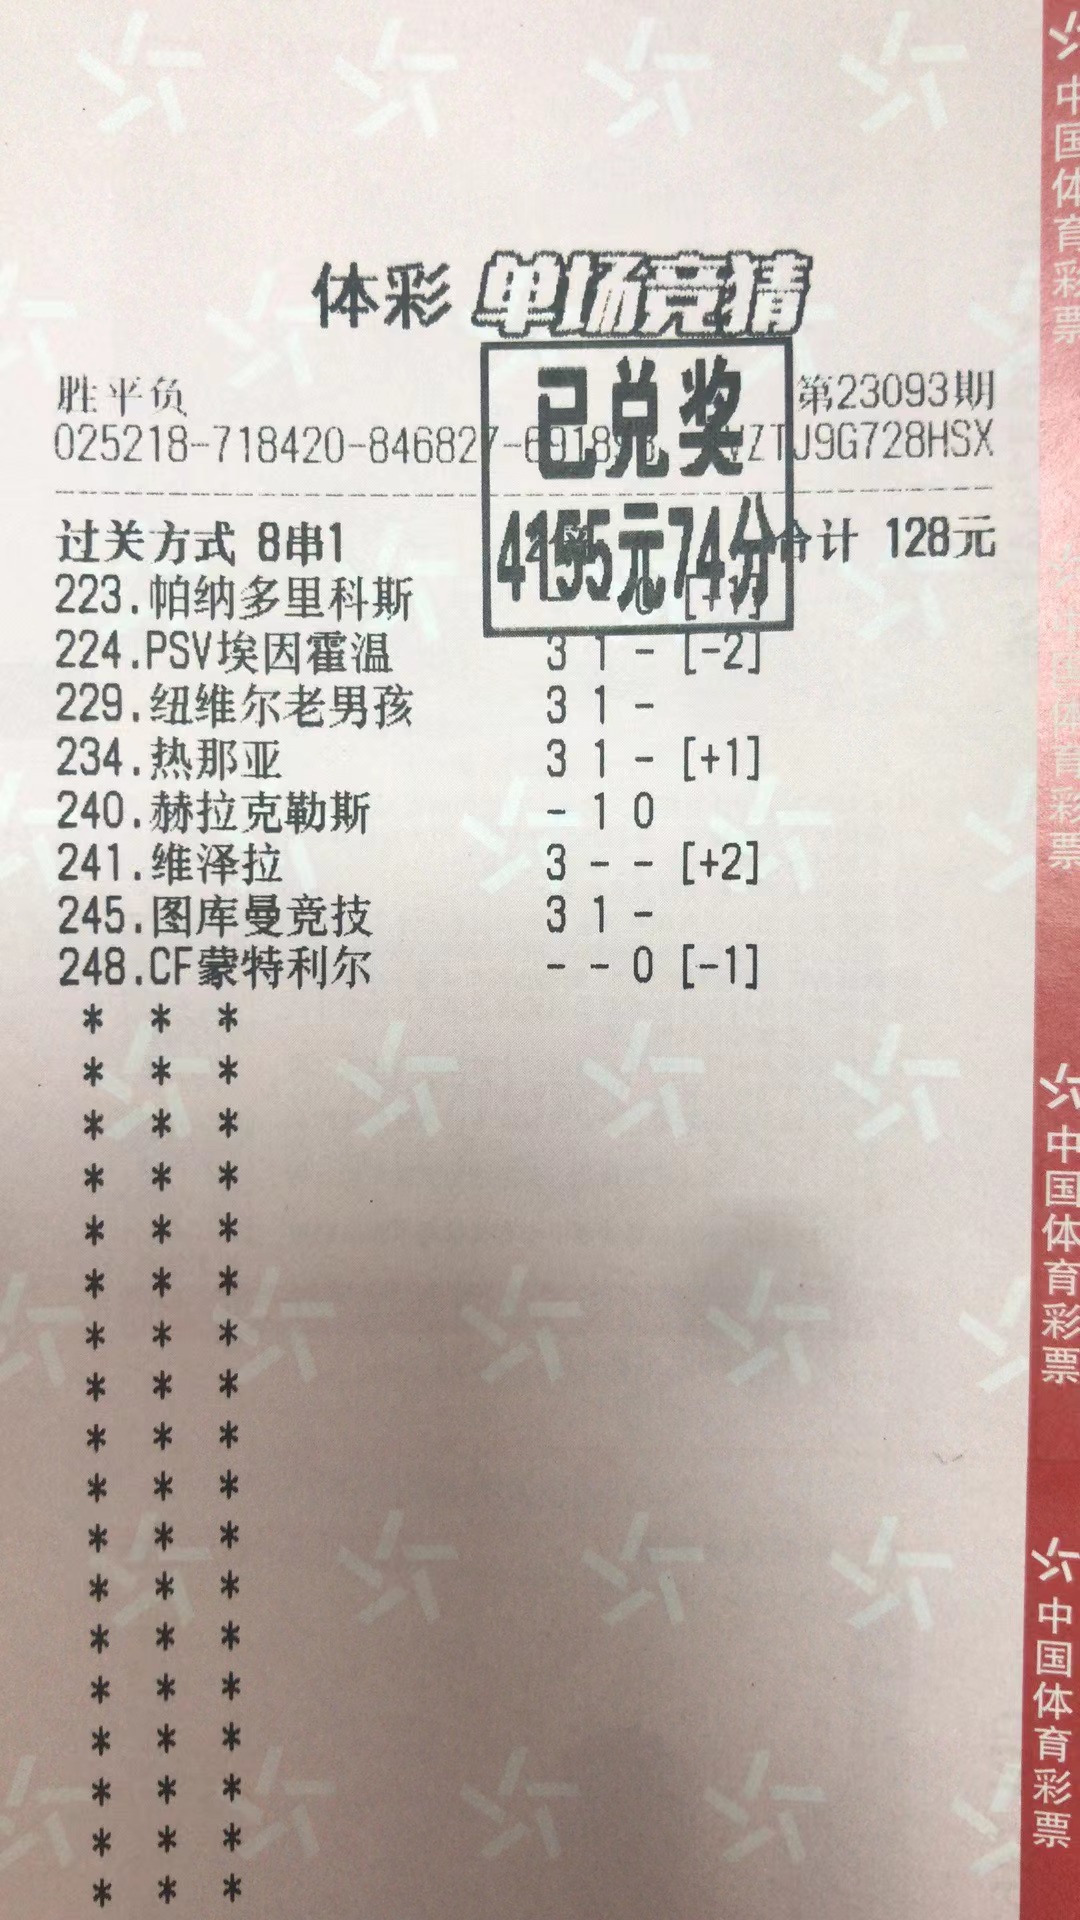 9月18日胜平负收米4155元-北单实体店